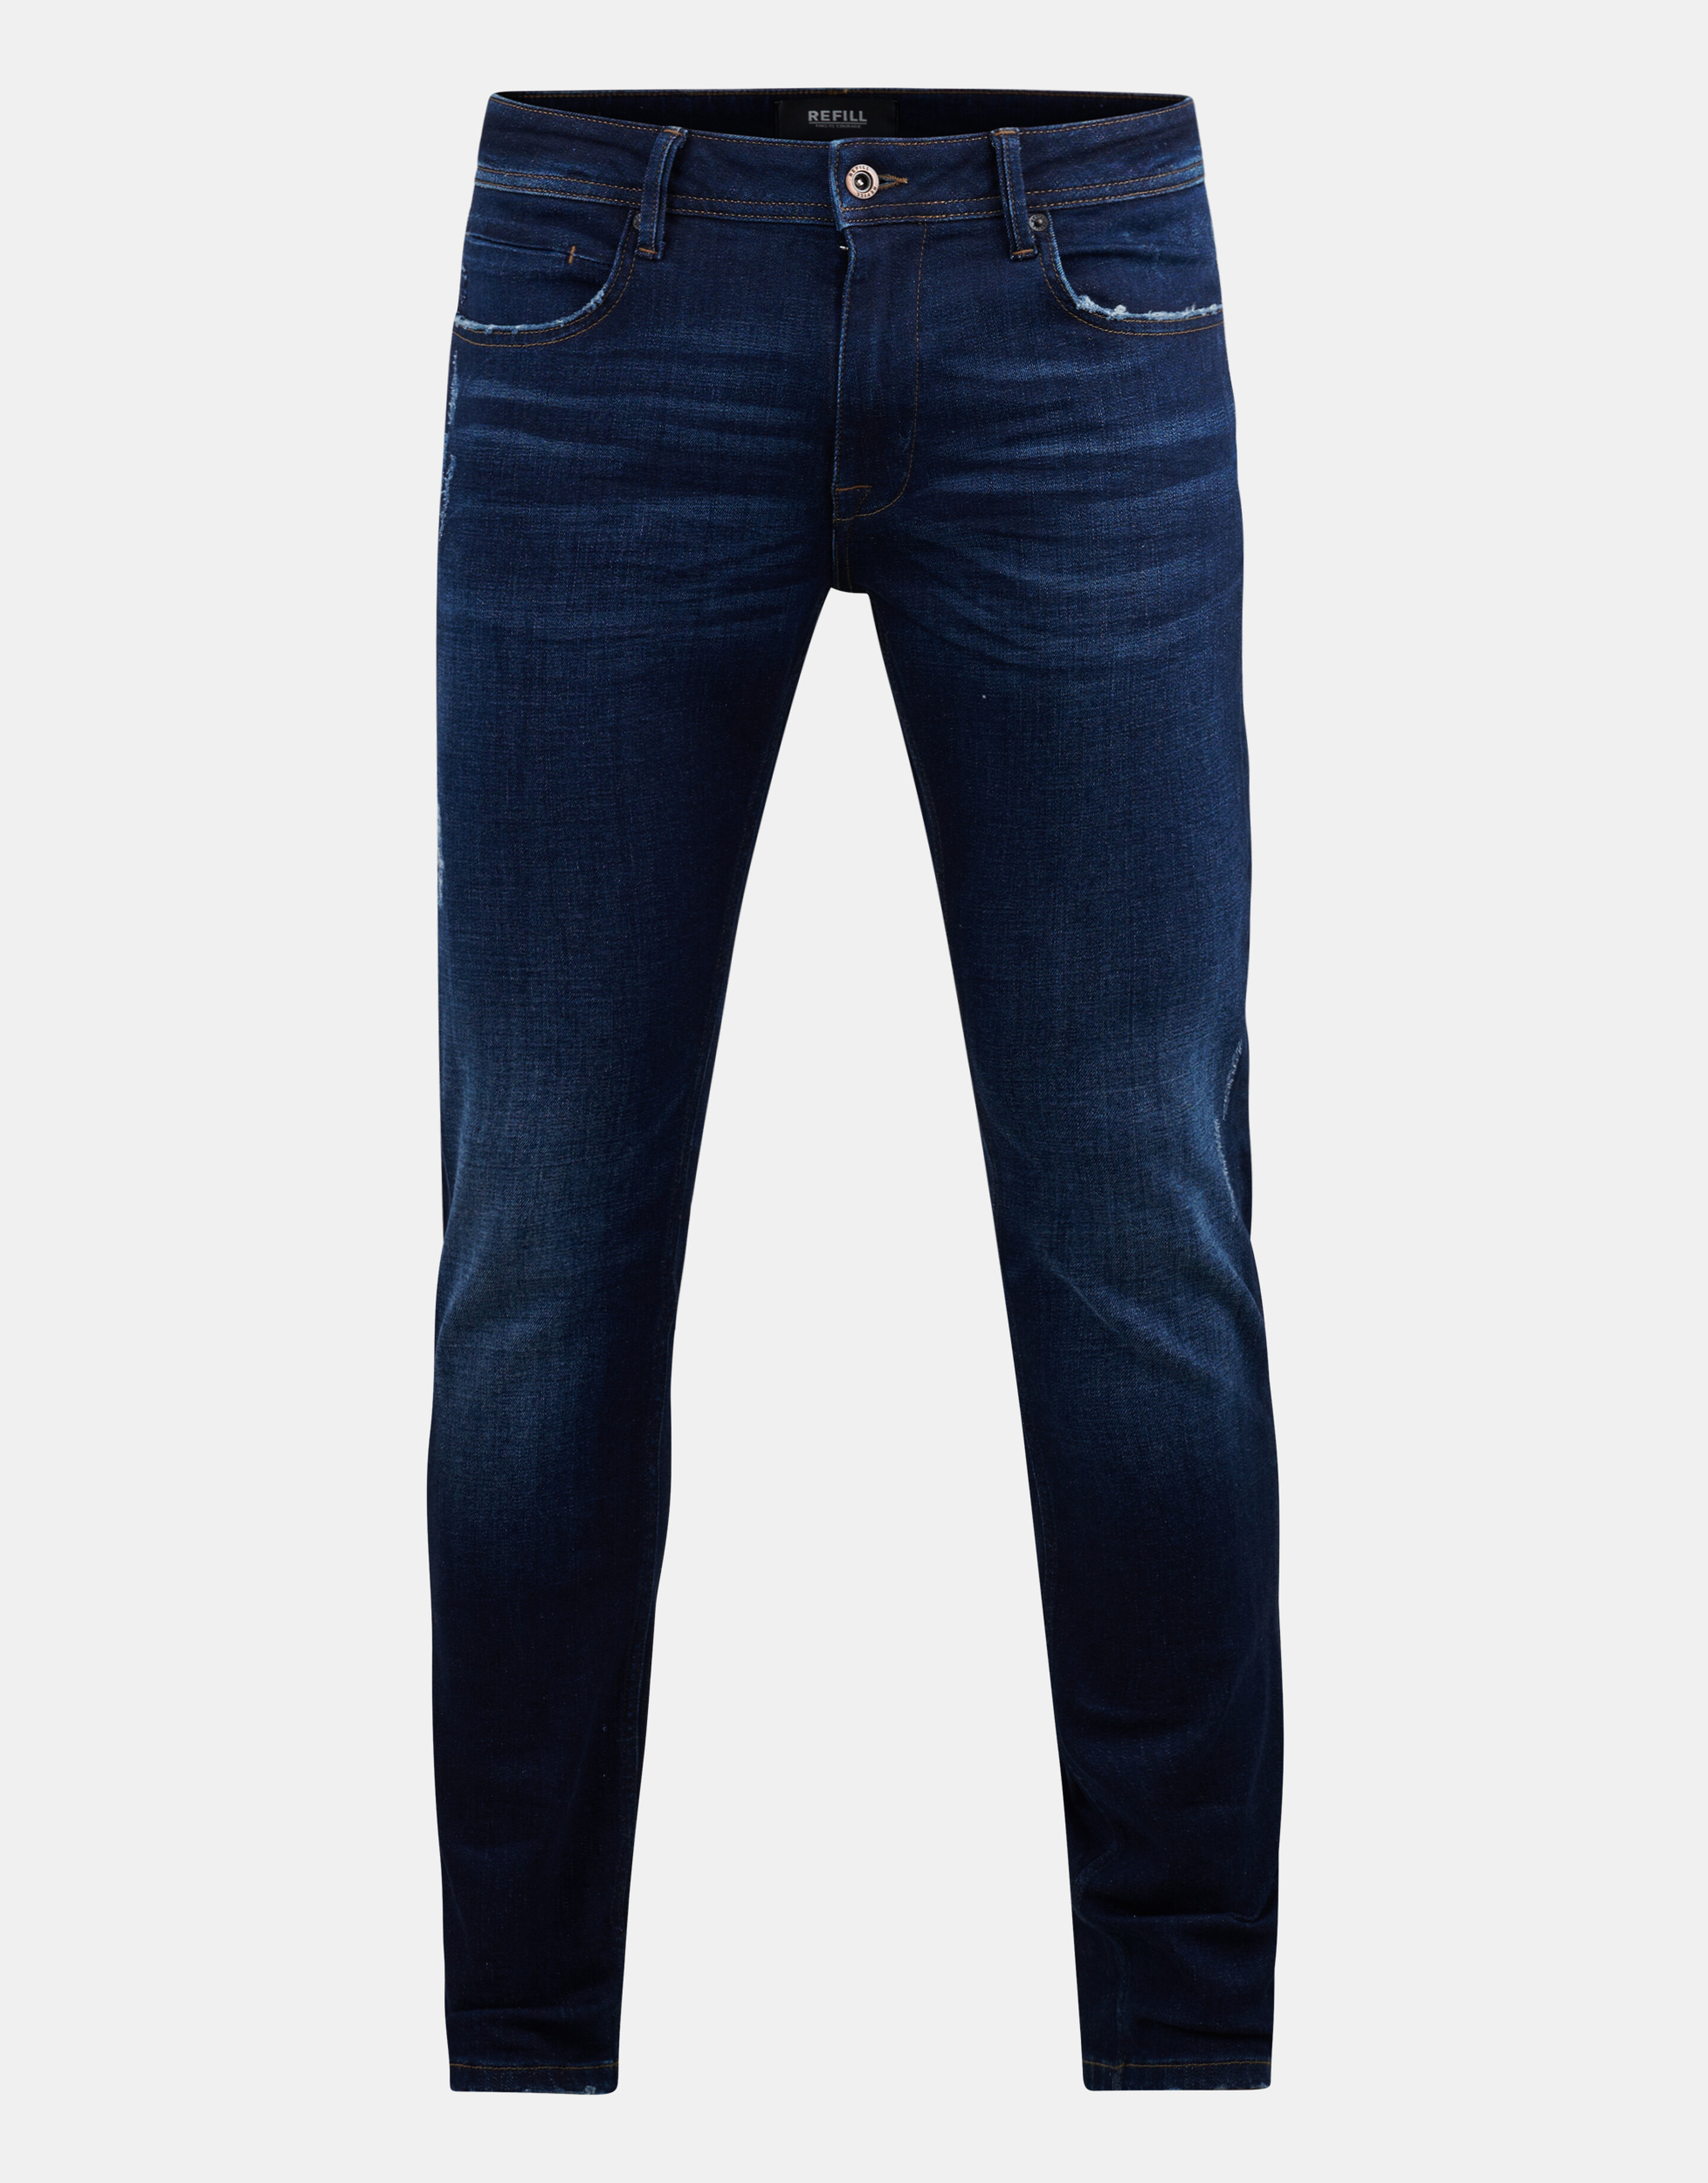 Skinny Jeans Donkerblauw L34 Refill